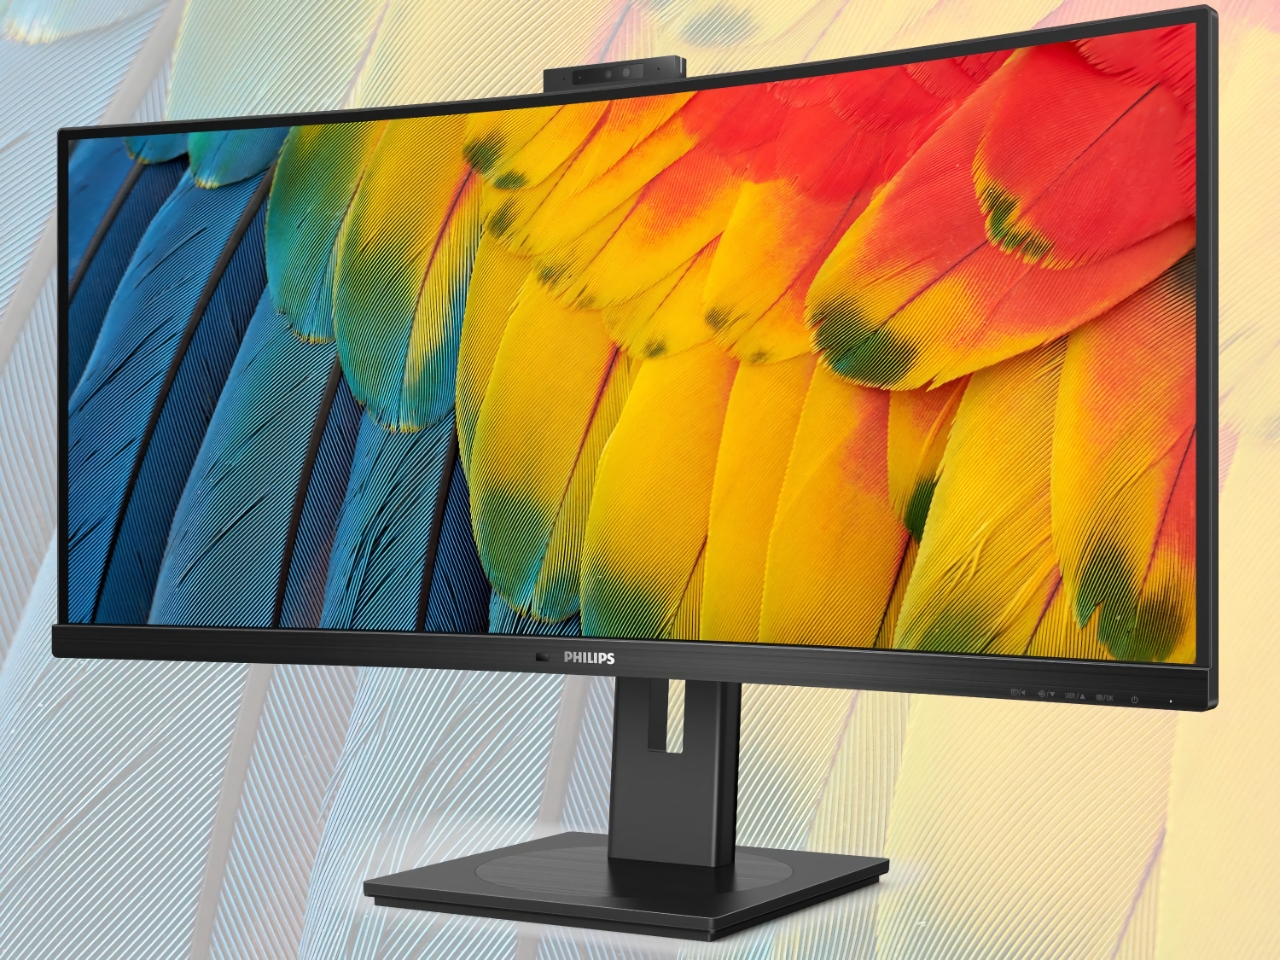 Philips ha presentato una nuova linea di monitor con schermi fino a 34 pollici, webcam integrata, supporto Windows Hello e hub USB-C